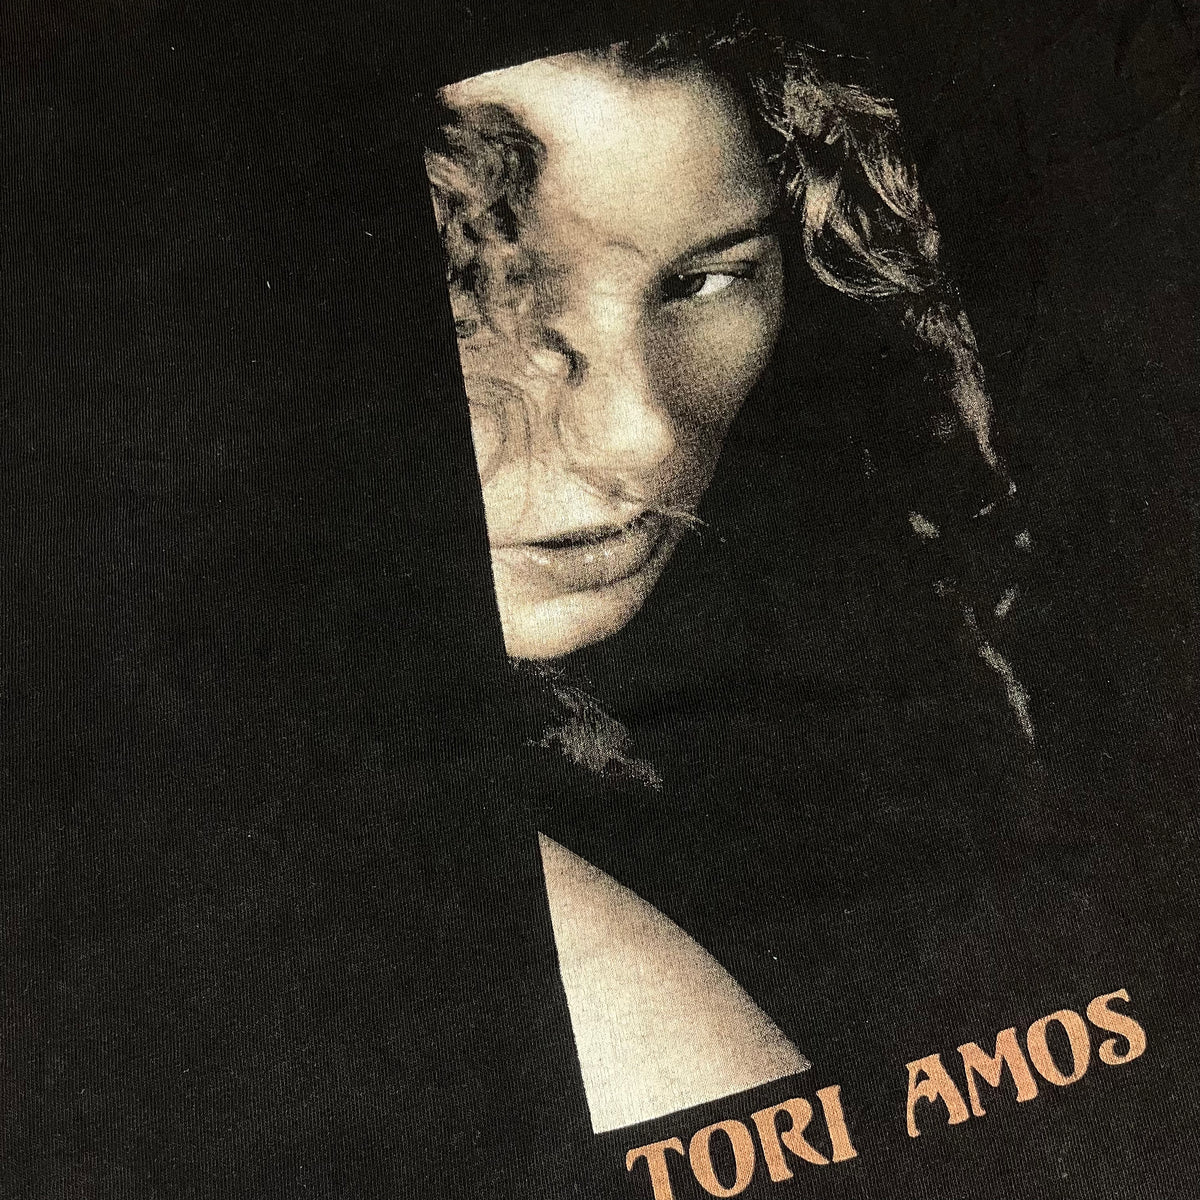 Vintage Tori Amos &quot;1996 Tour&quot; T-Shirt